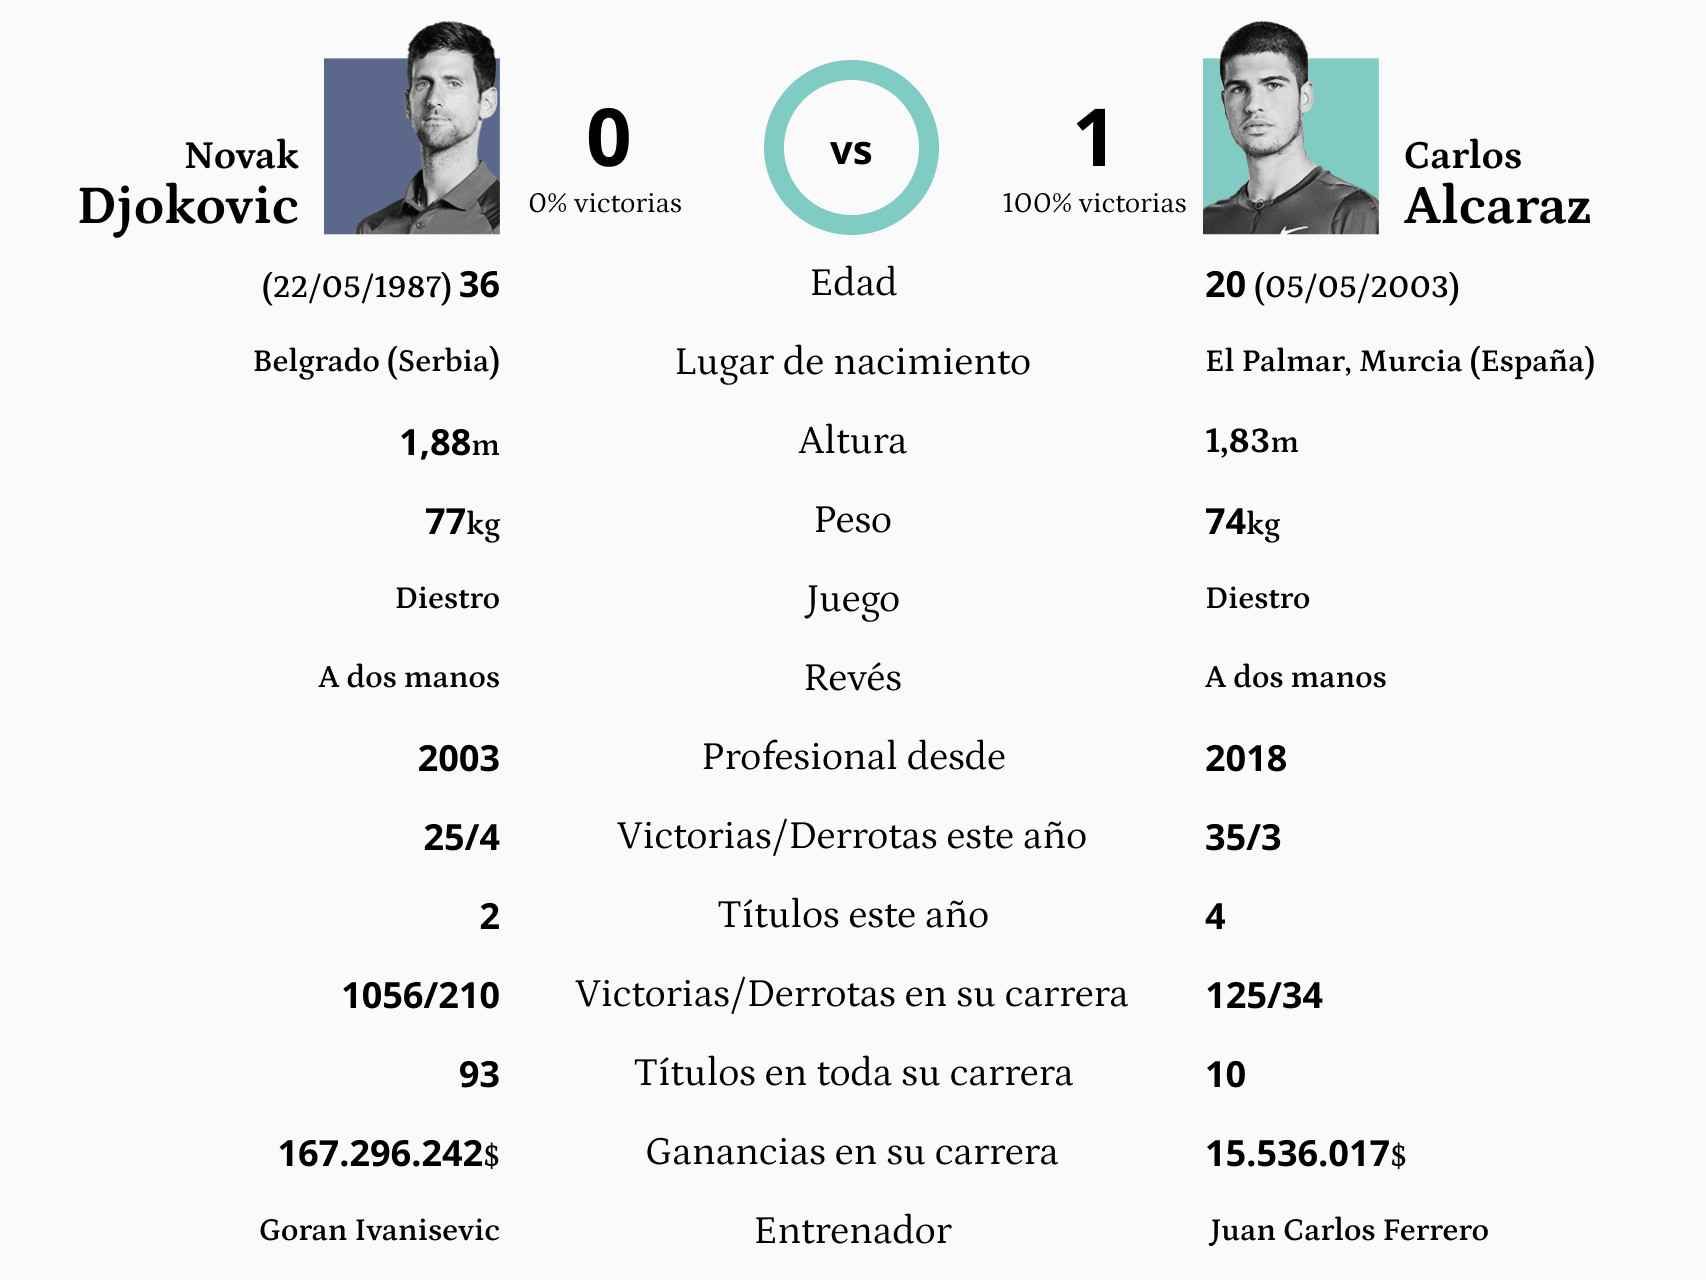 Cara a cara entre Novak Djokovic y Carlos Alcaraz